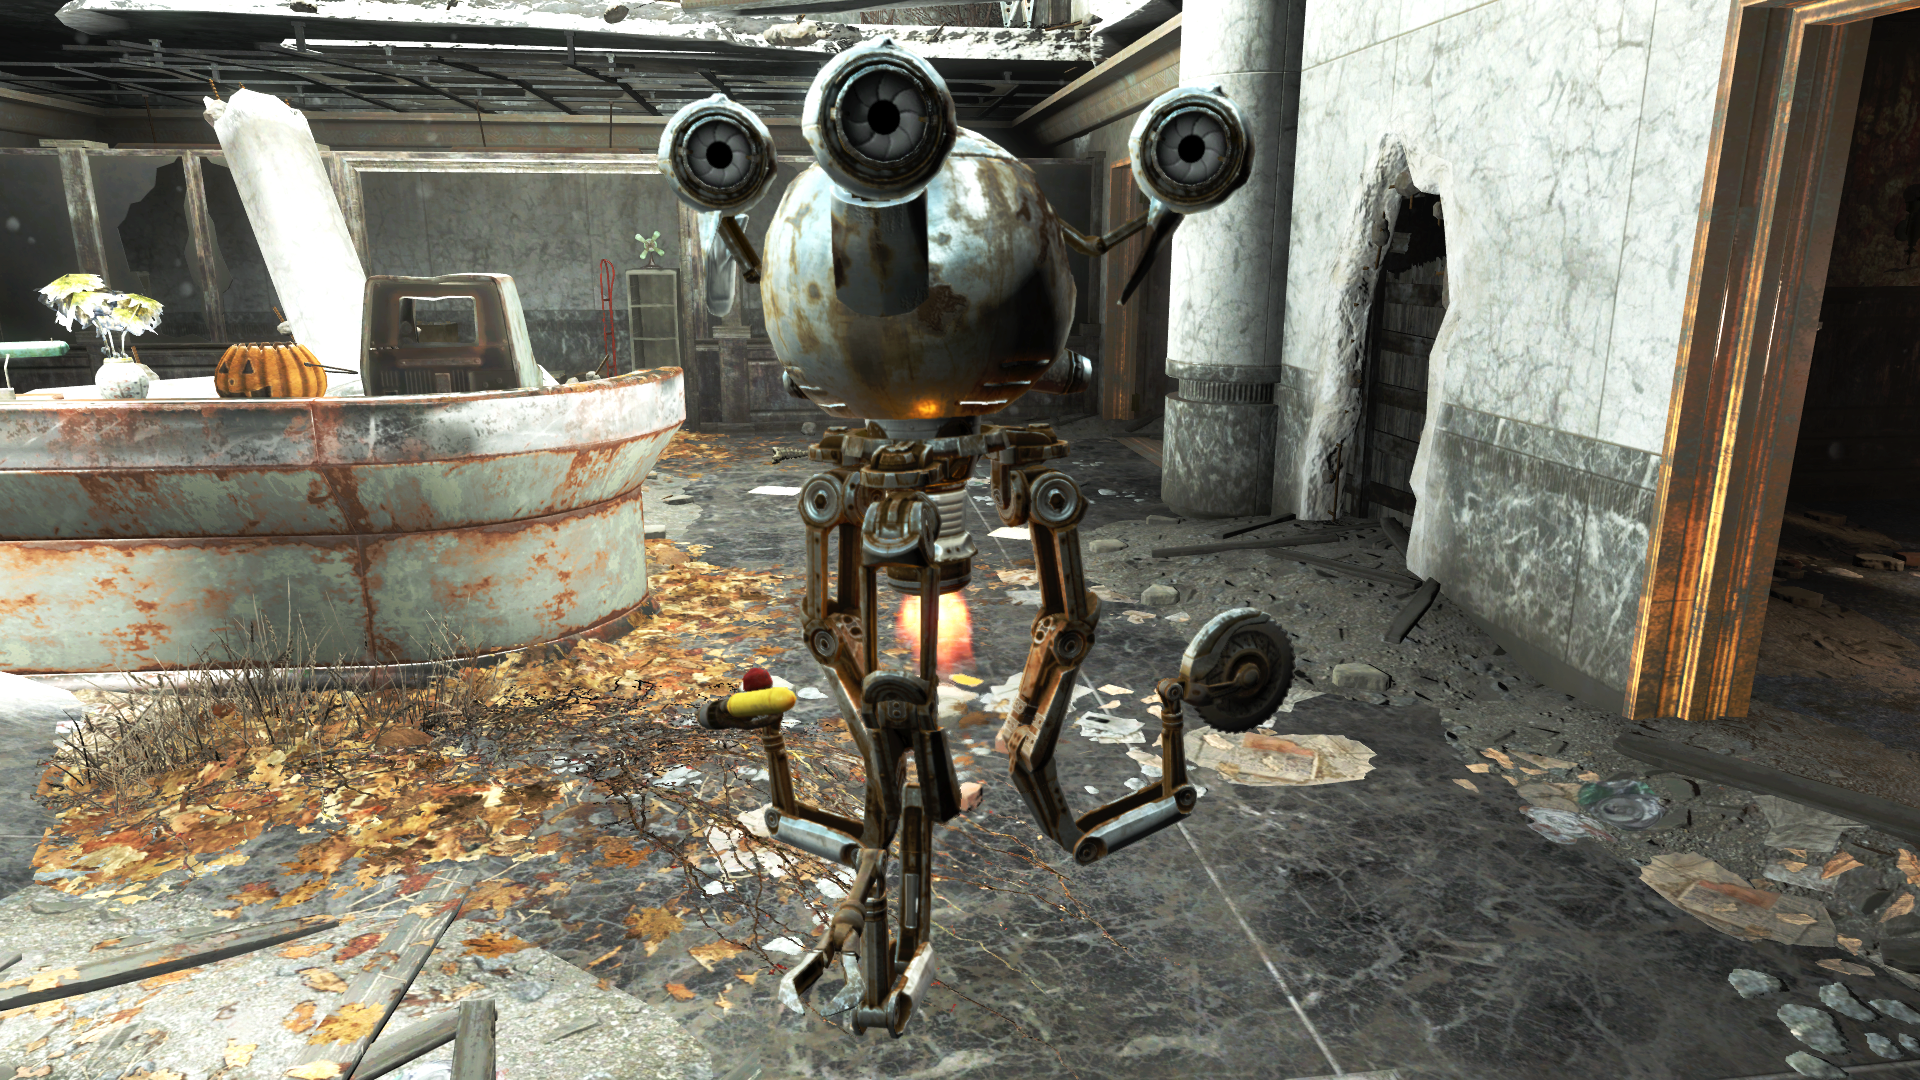 Скриншот Fallout 4 [v 1.7.15.0.1 + 6 DLC] (2015) PC | RePack от R.G. Механики